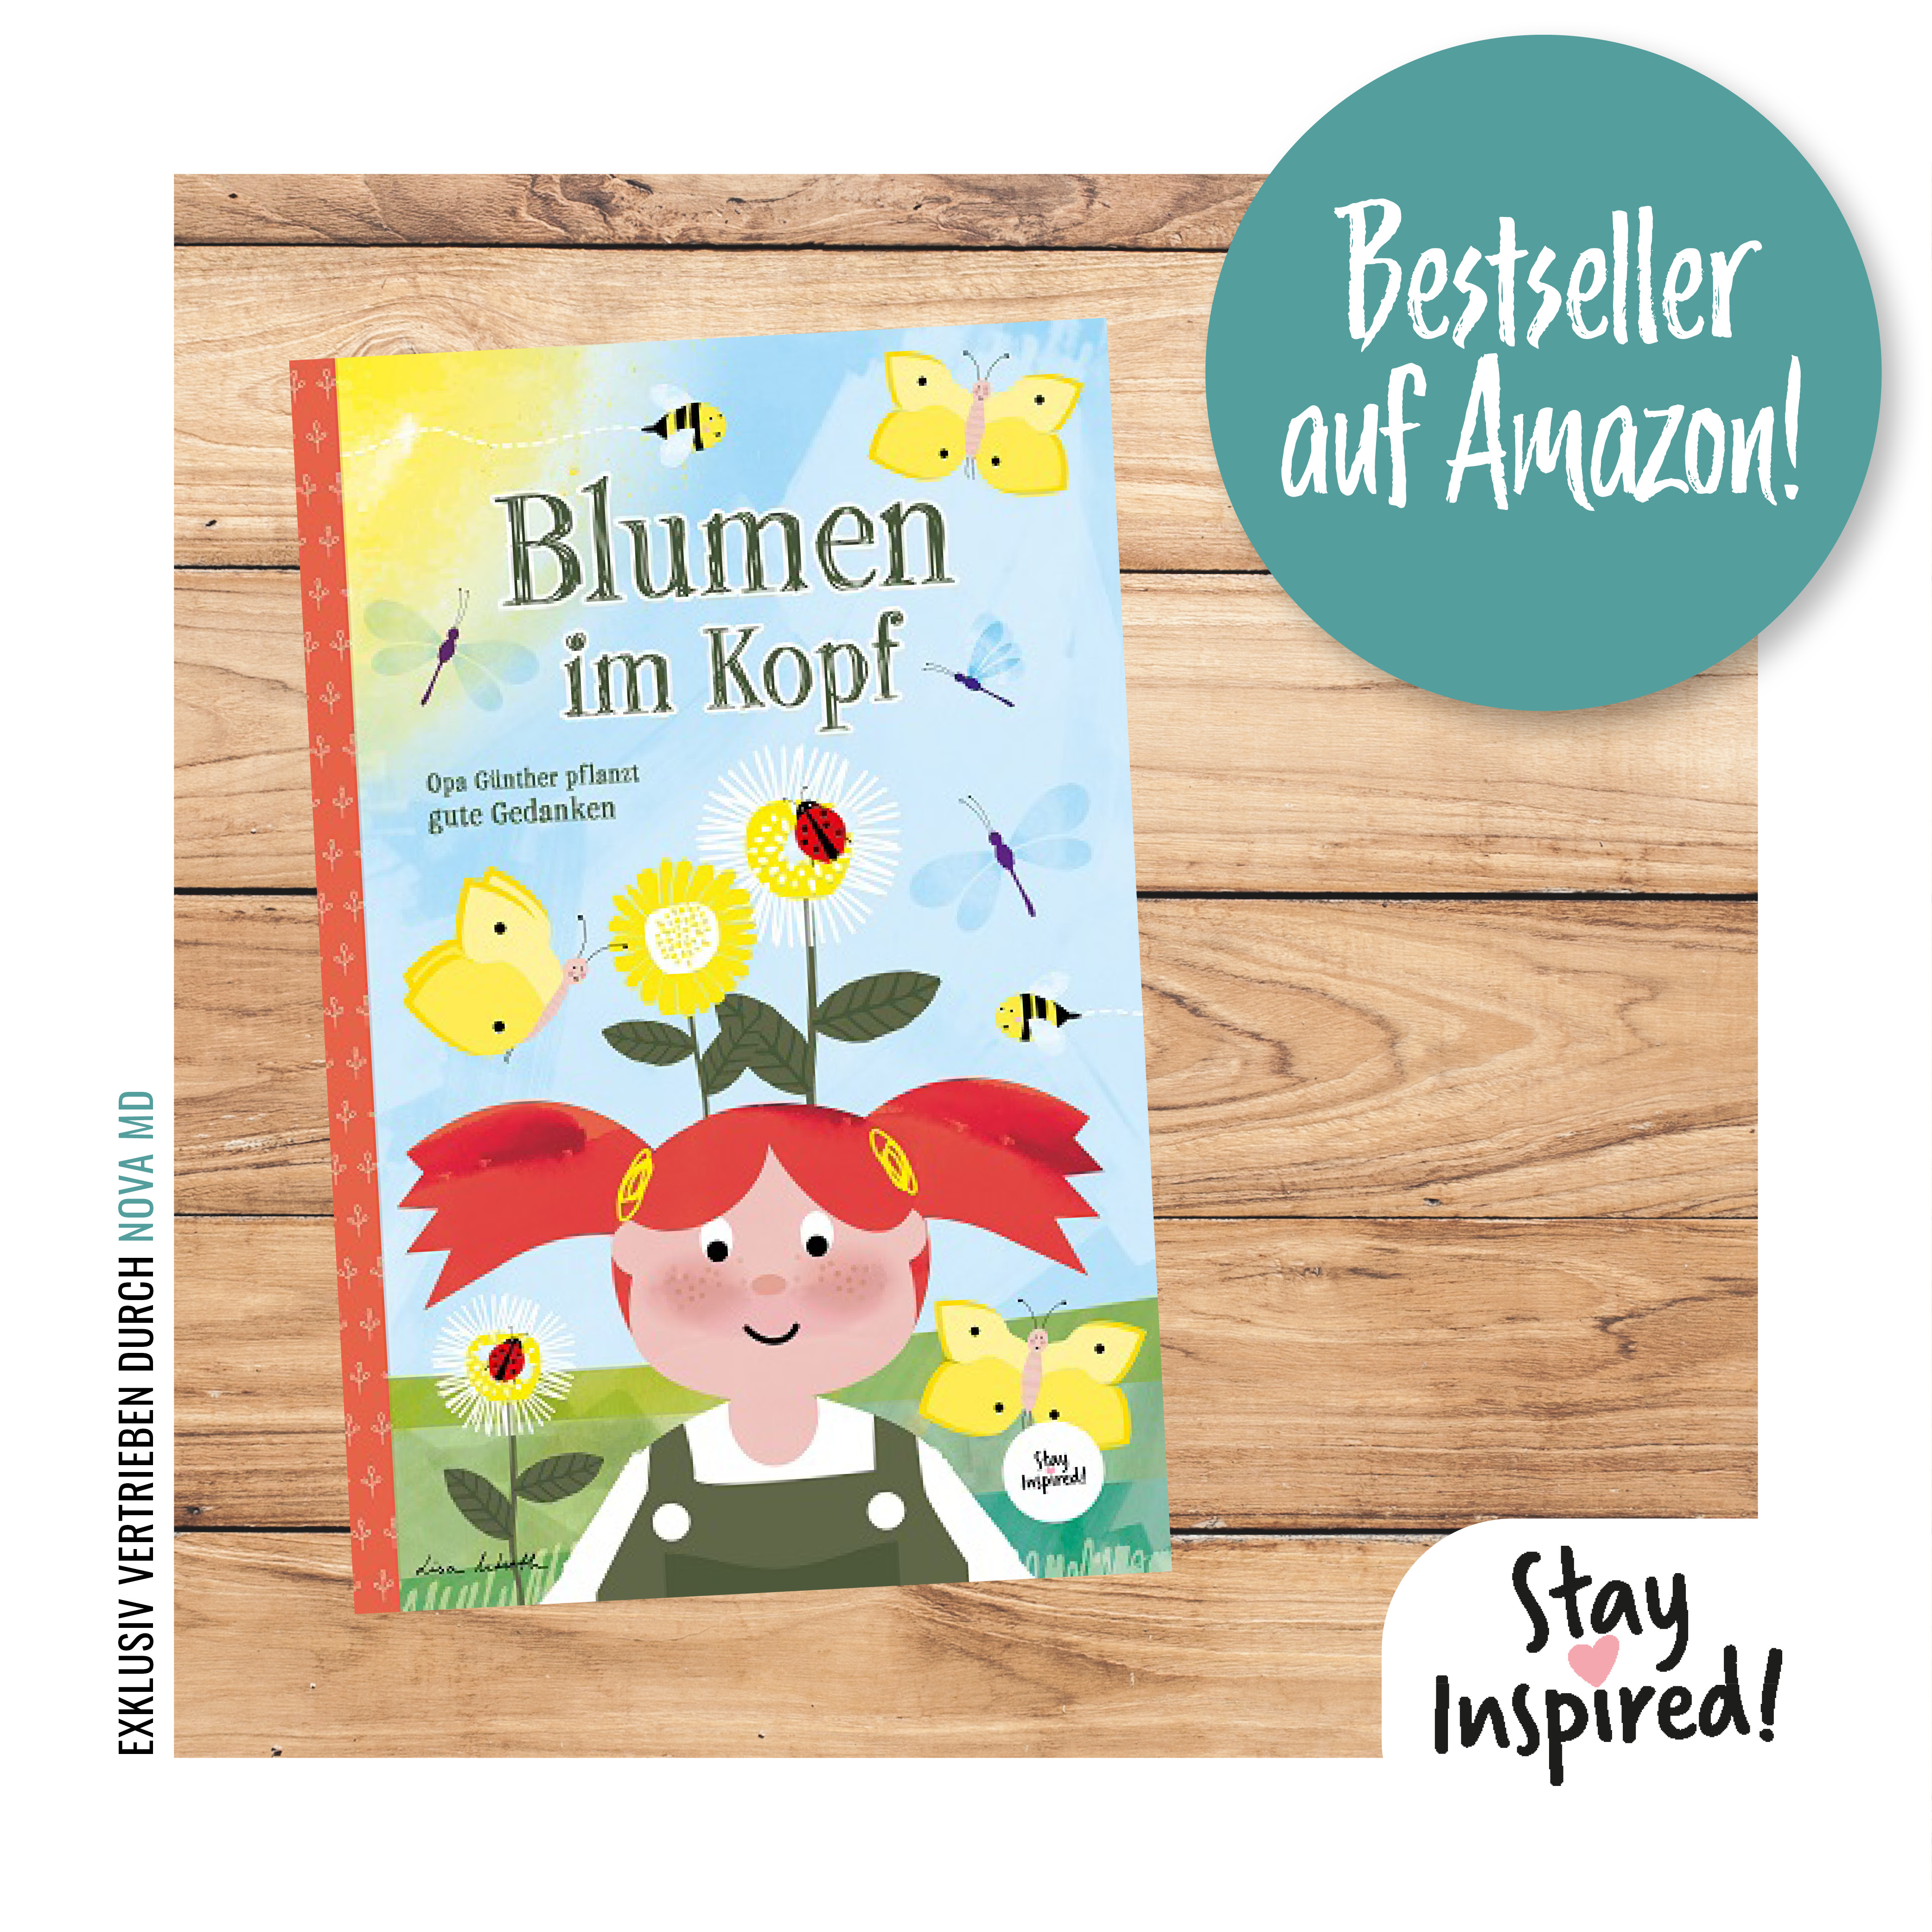 Das neue Kinderbuch „Blumen im Kopf. Opa Günther pflanzt gute Gedanken“ der diplomierten Grafikdesignerin Lisa Wirth ist diese Woche auf Platz 1 der Amazon Bestseller Charts eingestiegen!